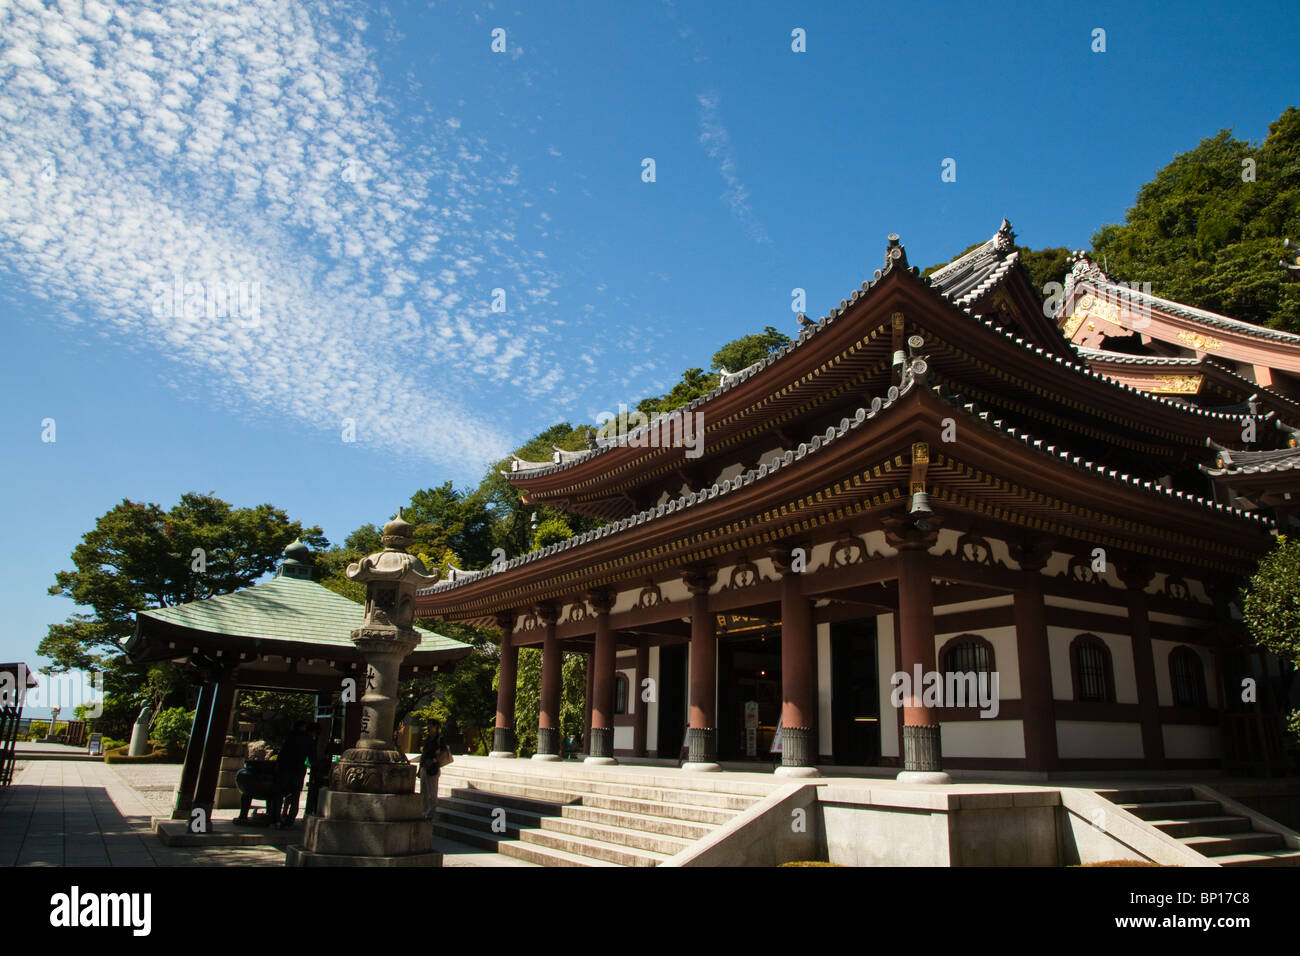 Hase-Dera Tempel bekannt formal als Kaikozan Jishoin Hase-Dera ist einer der großen buddhistischen Tempel in der Stadt Kamakura Stockfoto